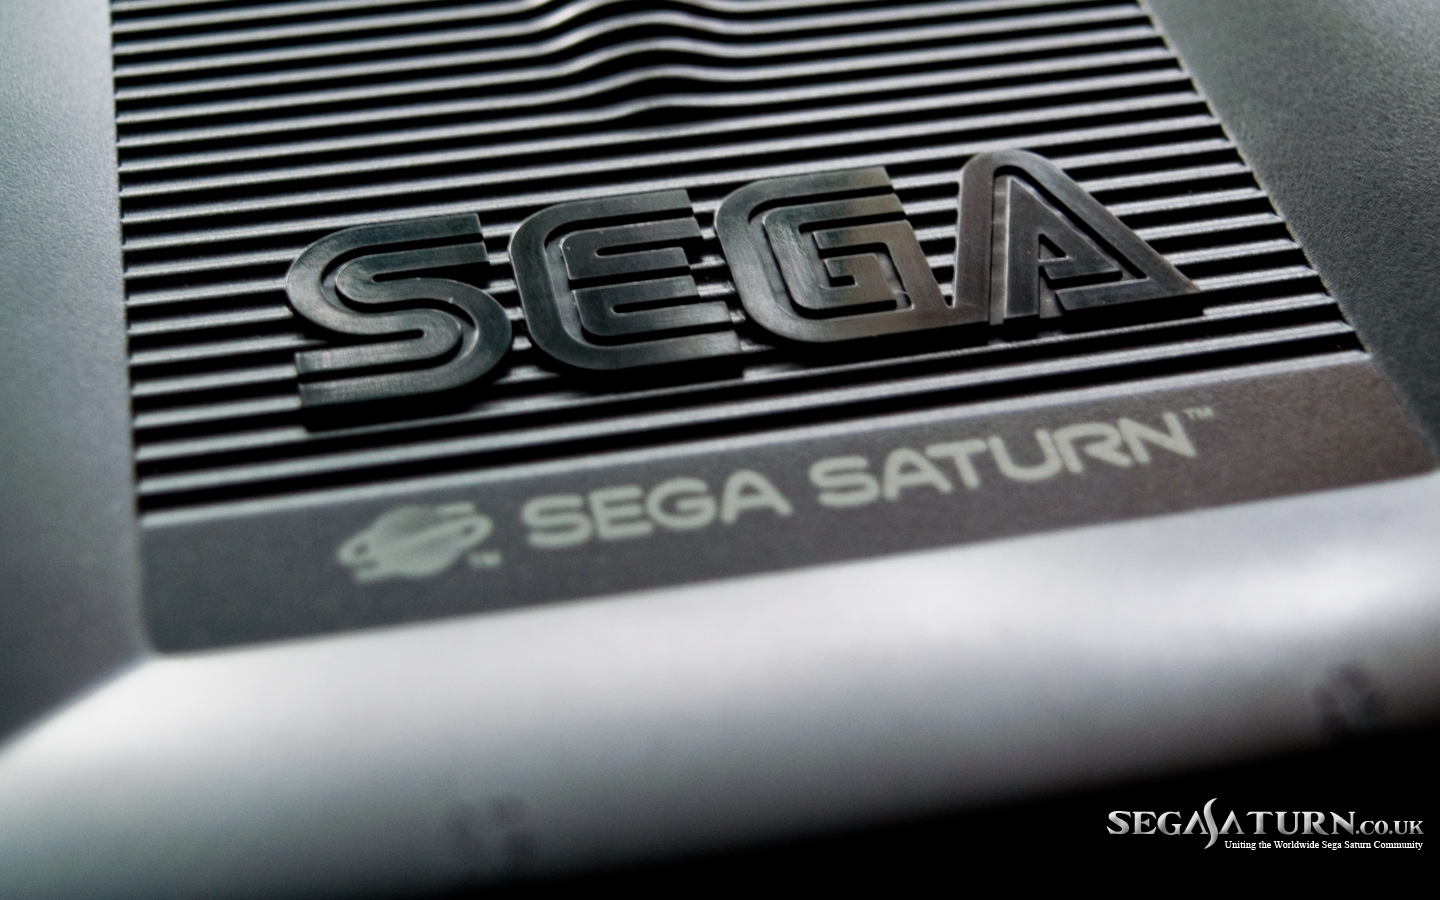 Sega Saturn Uk Wallpaper Segasaturn Co